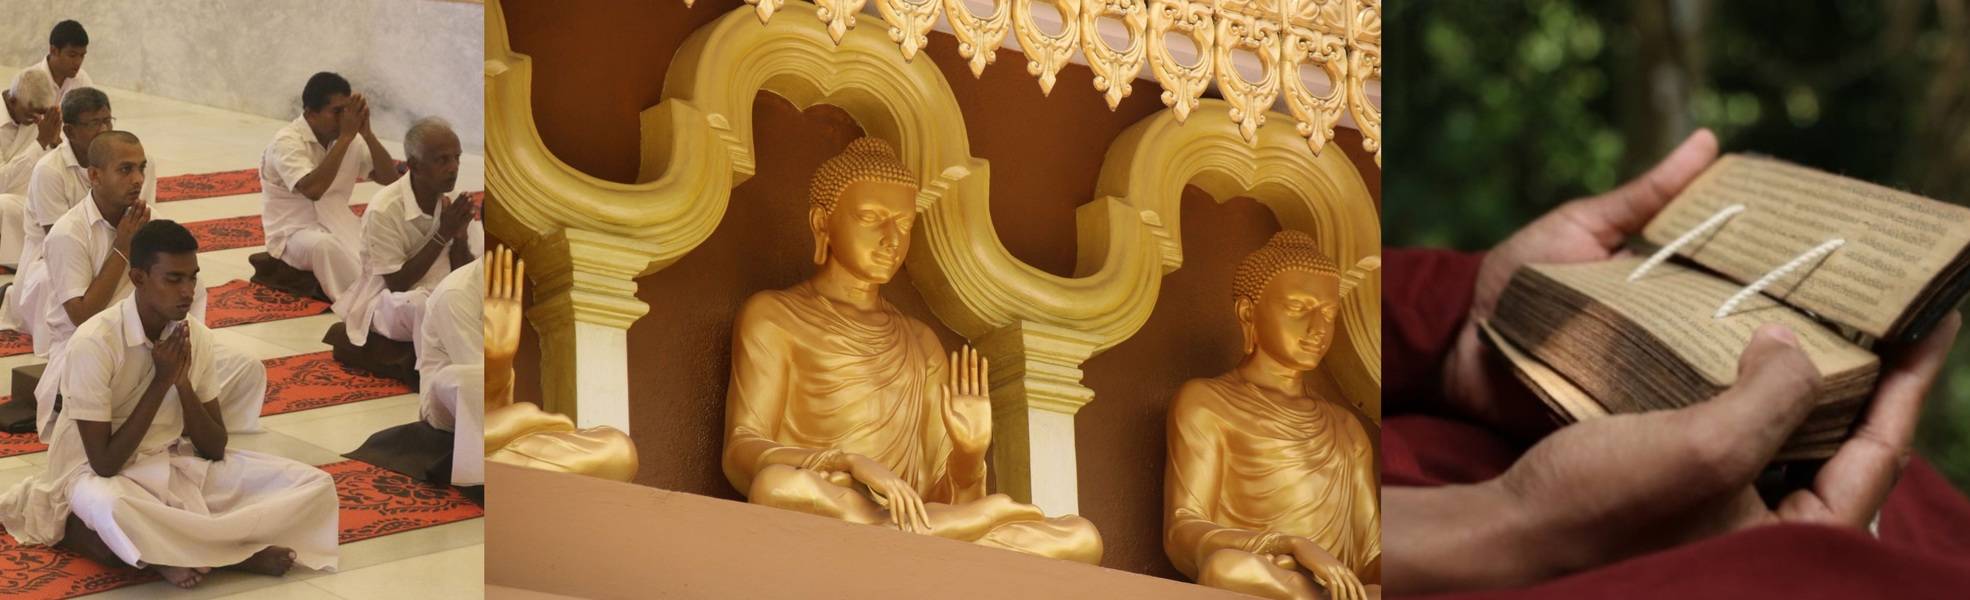 Freiwilligenarbeit im Kloster auf Sri Lanka